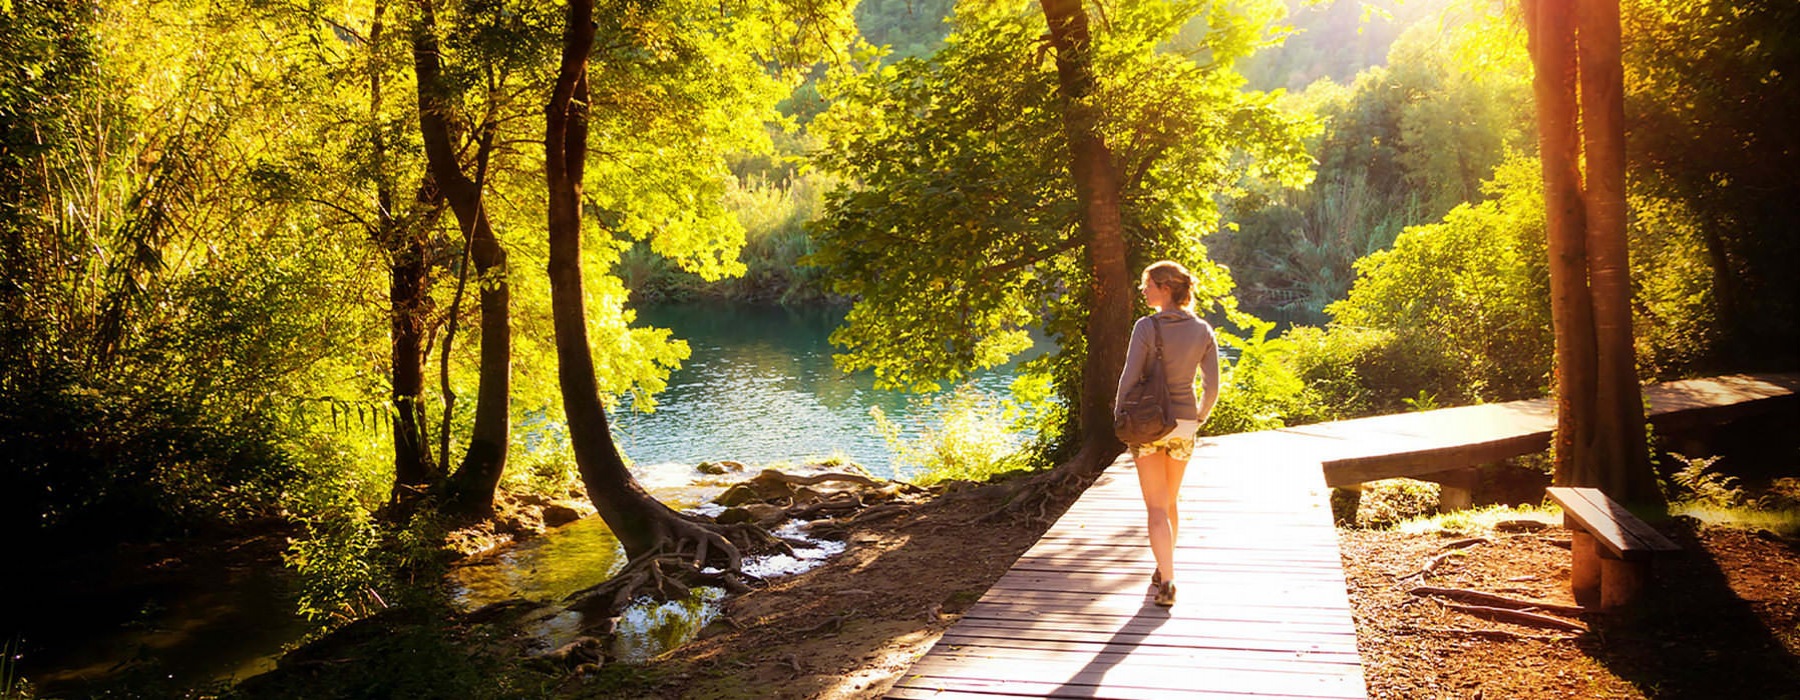 A women is walking down a beautiful wooded path alongside a river.